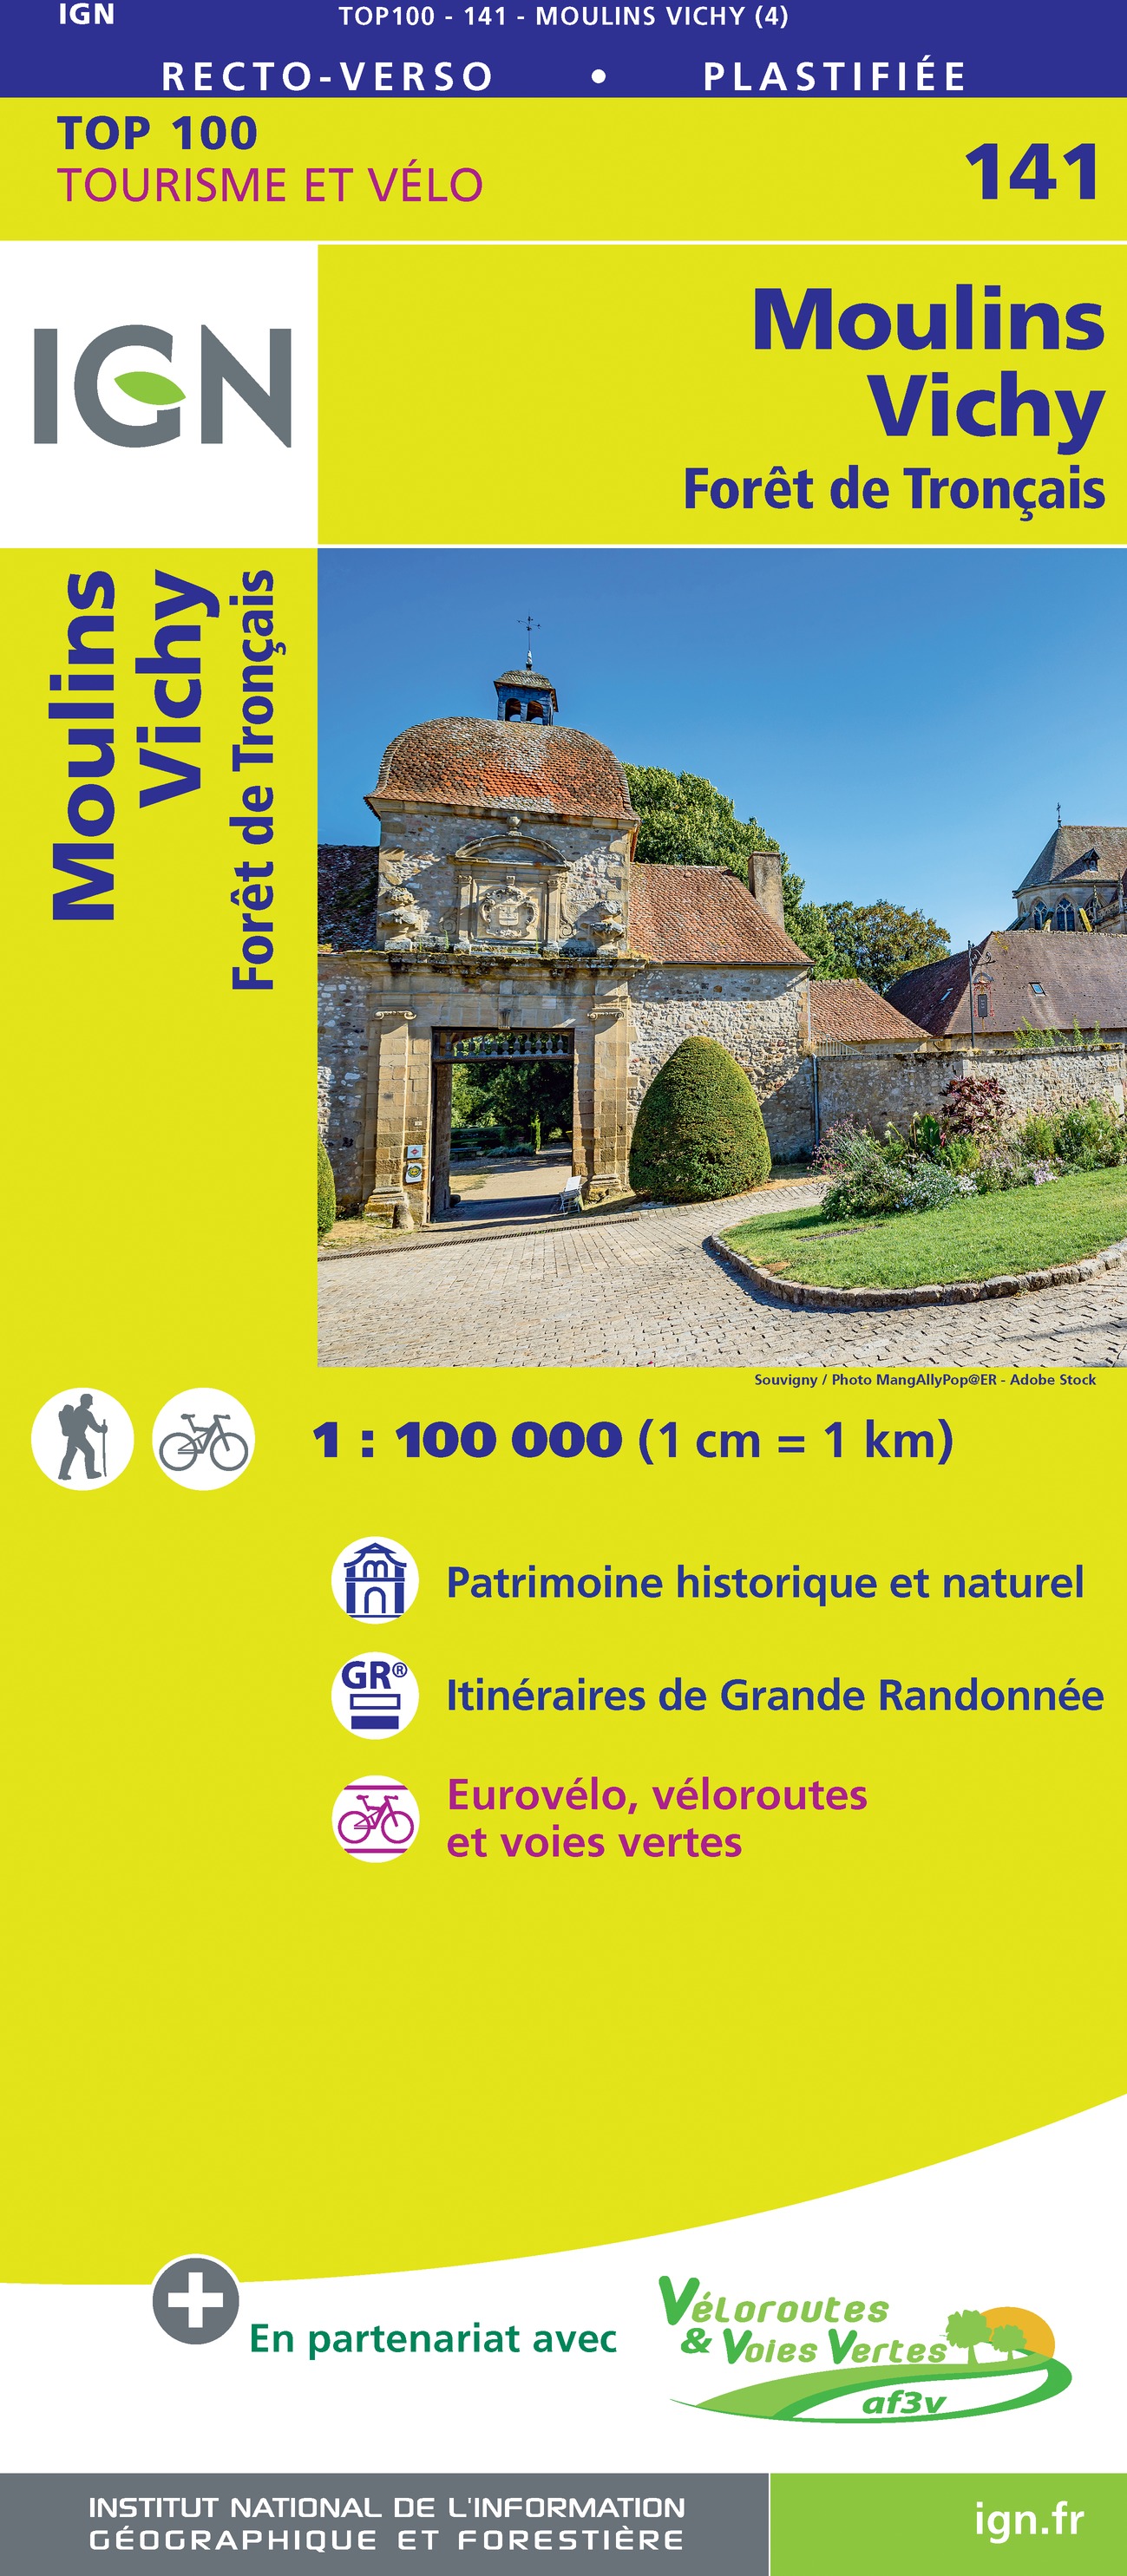 Online bestellen: Fietskaart - Wegenkaart - landkaart 141 Moulins - Vichy | IGN - Institut Géographique National